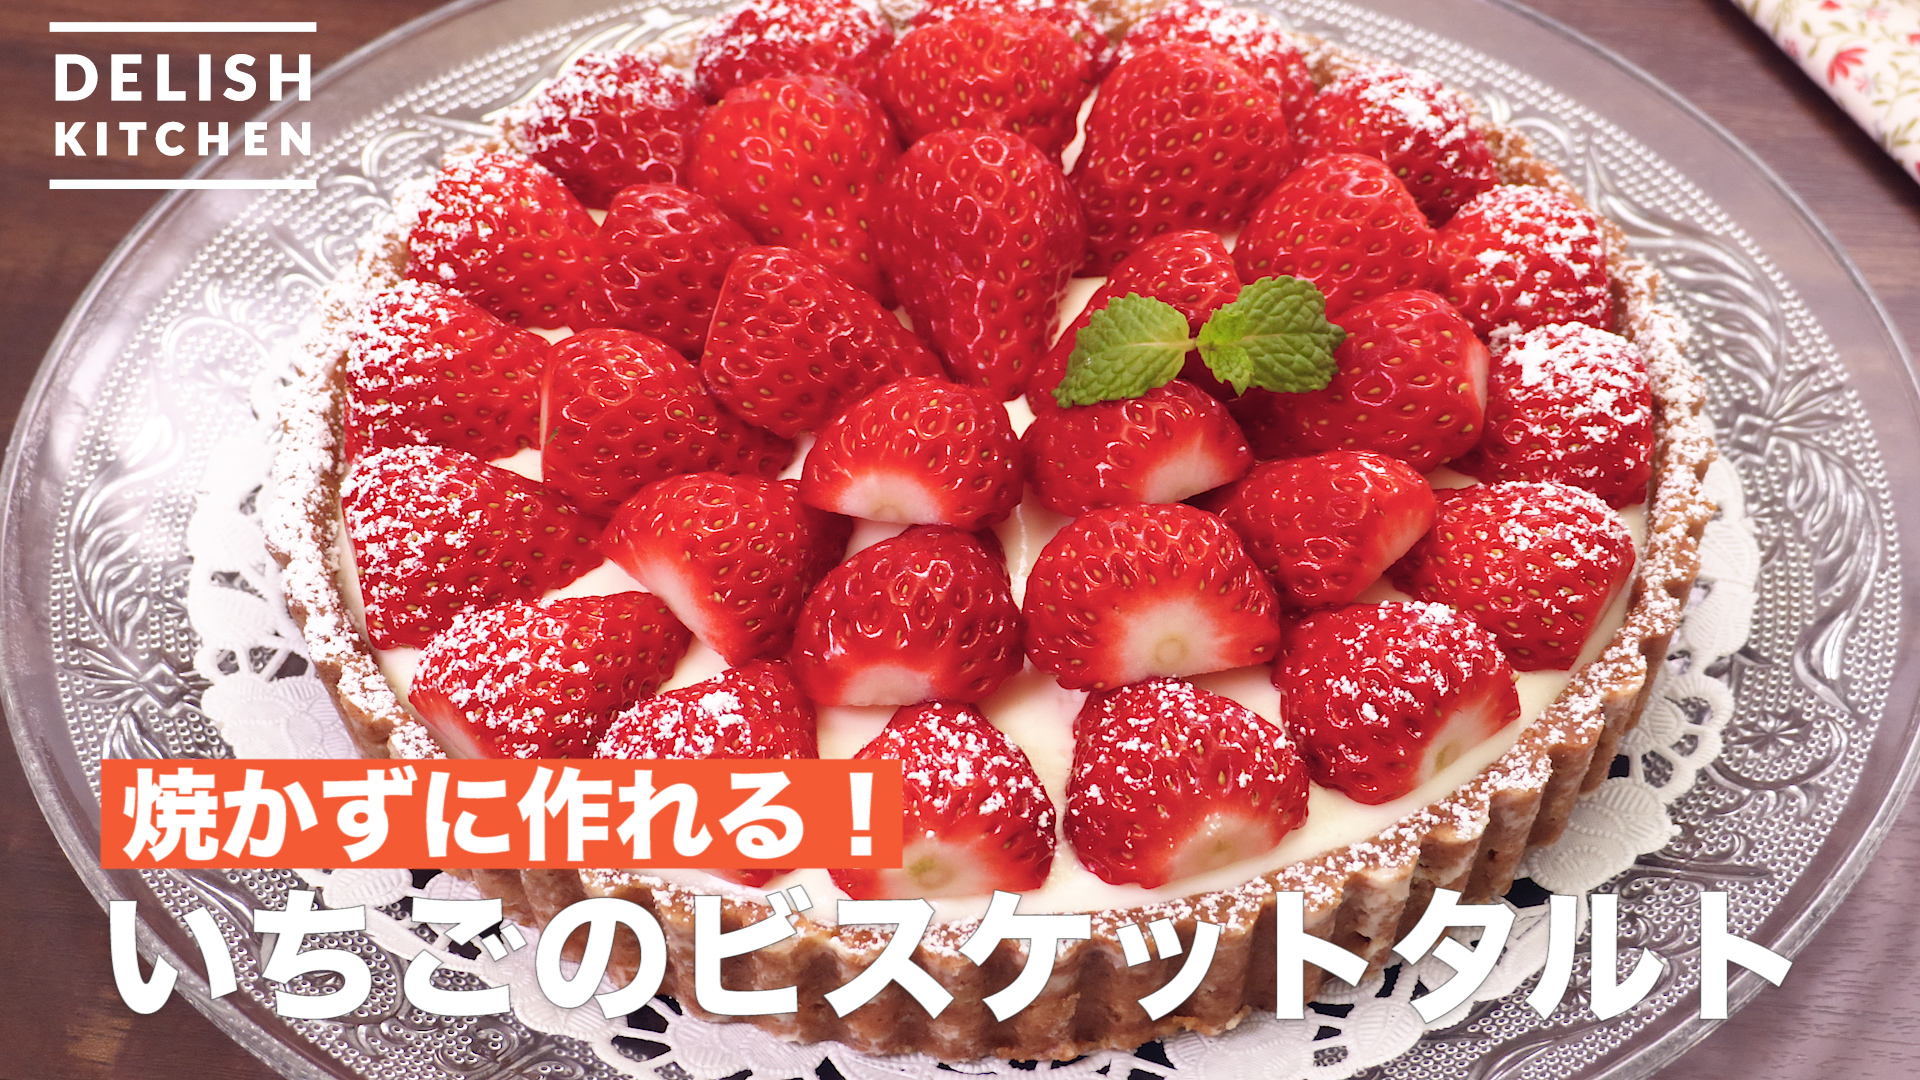 焼かずに作れる いちごのビスケットタルト How To Make Strawberry Biscuit Tart Delish Kitchen デリッシュキッチン Yahoo Japan